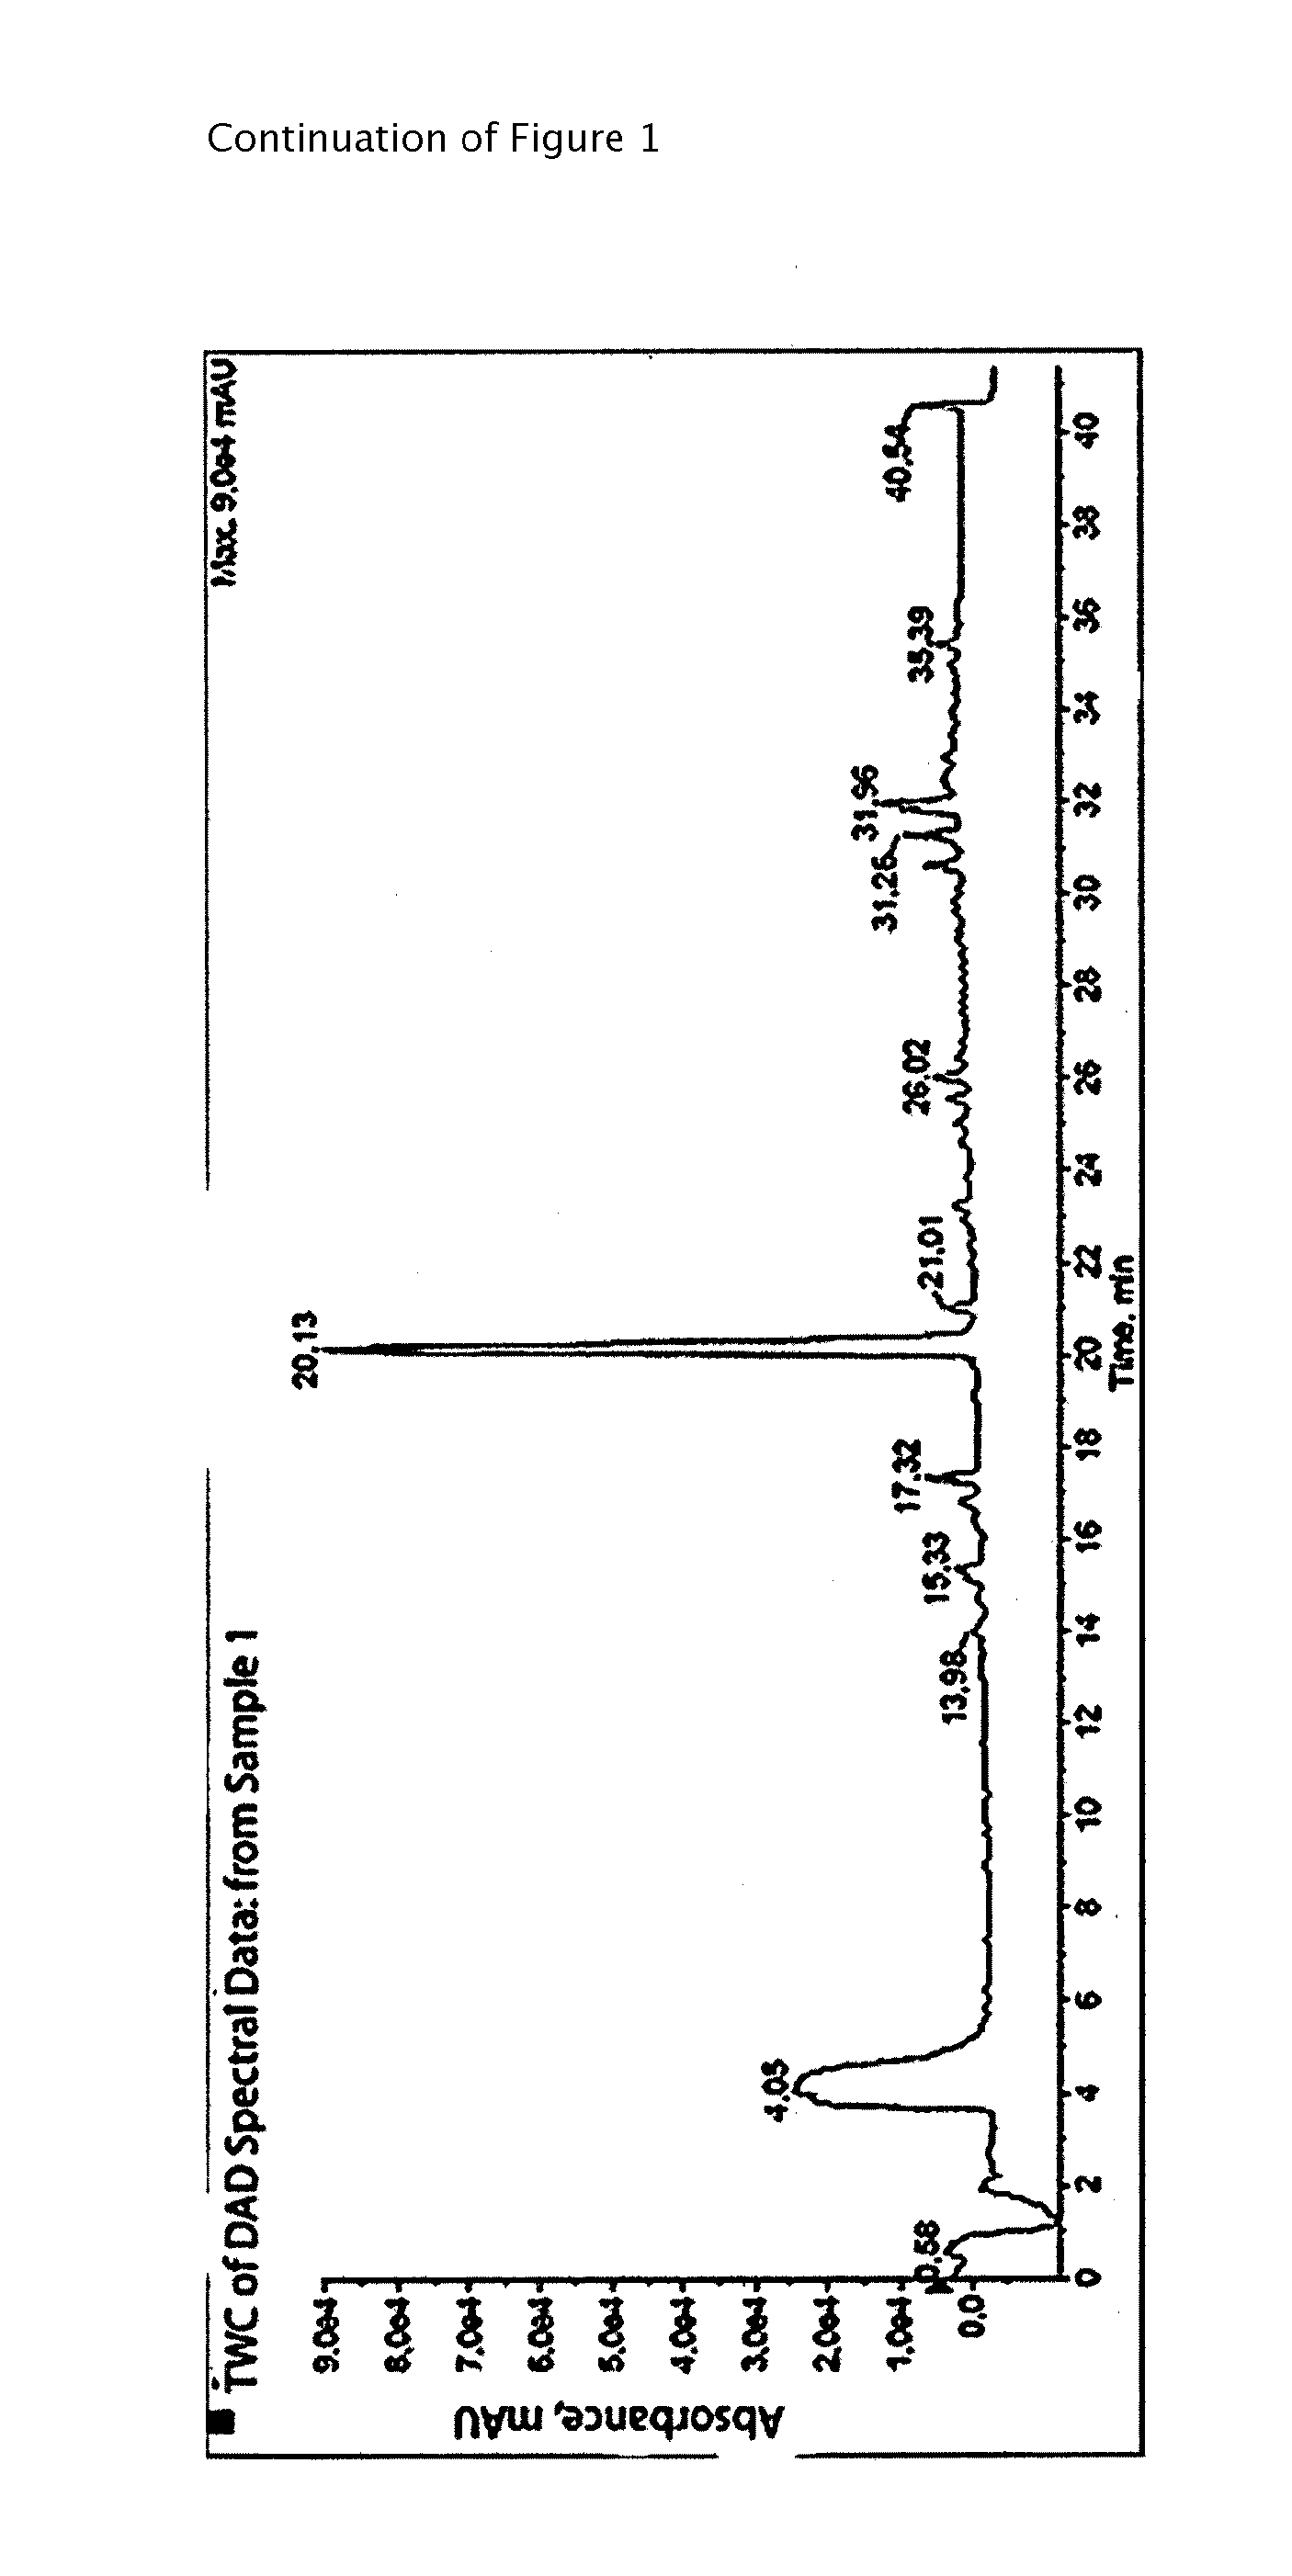 Anti-dandruff composition comprising 1-acetoxychavicol acetate